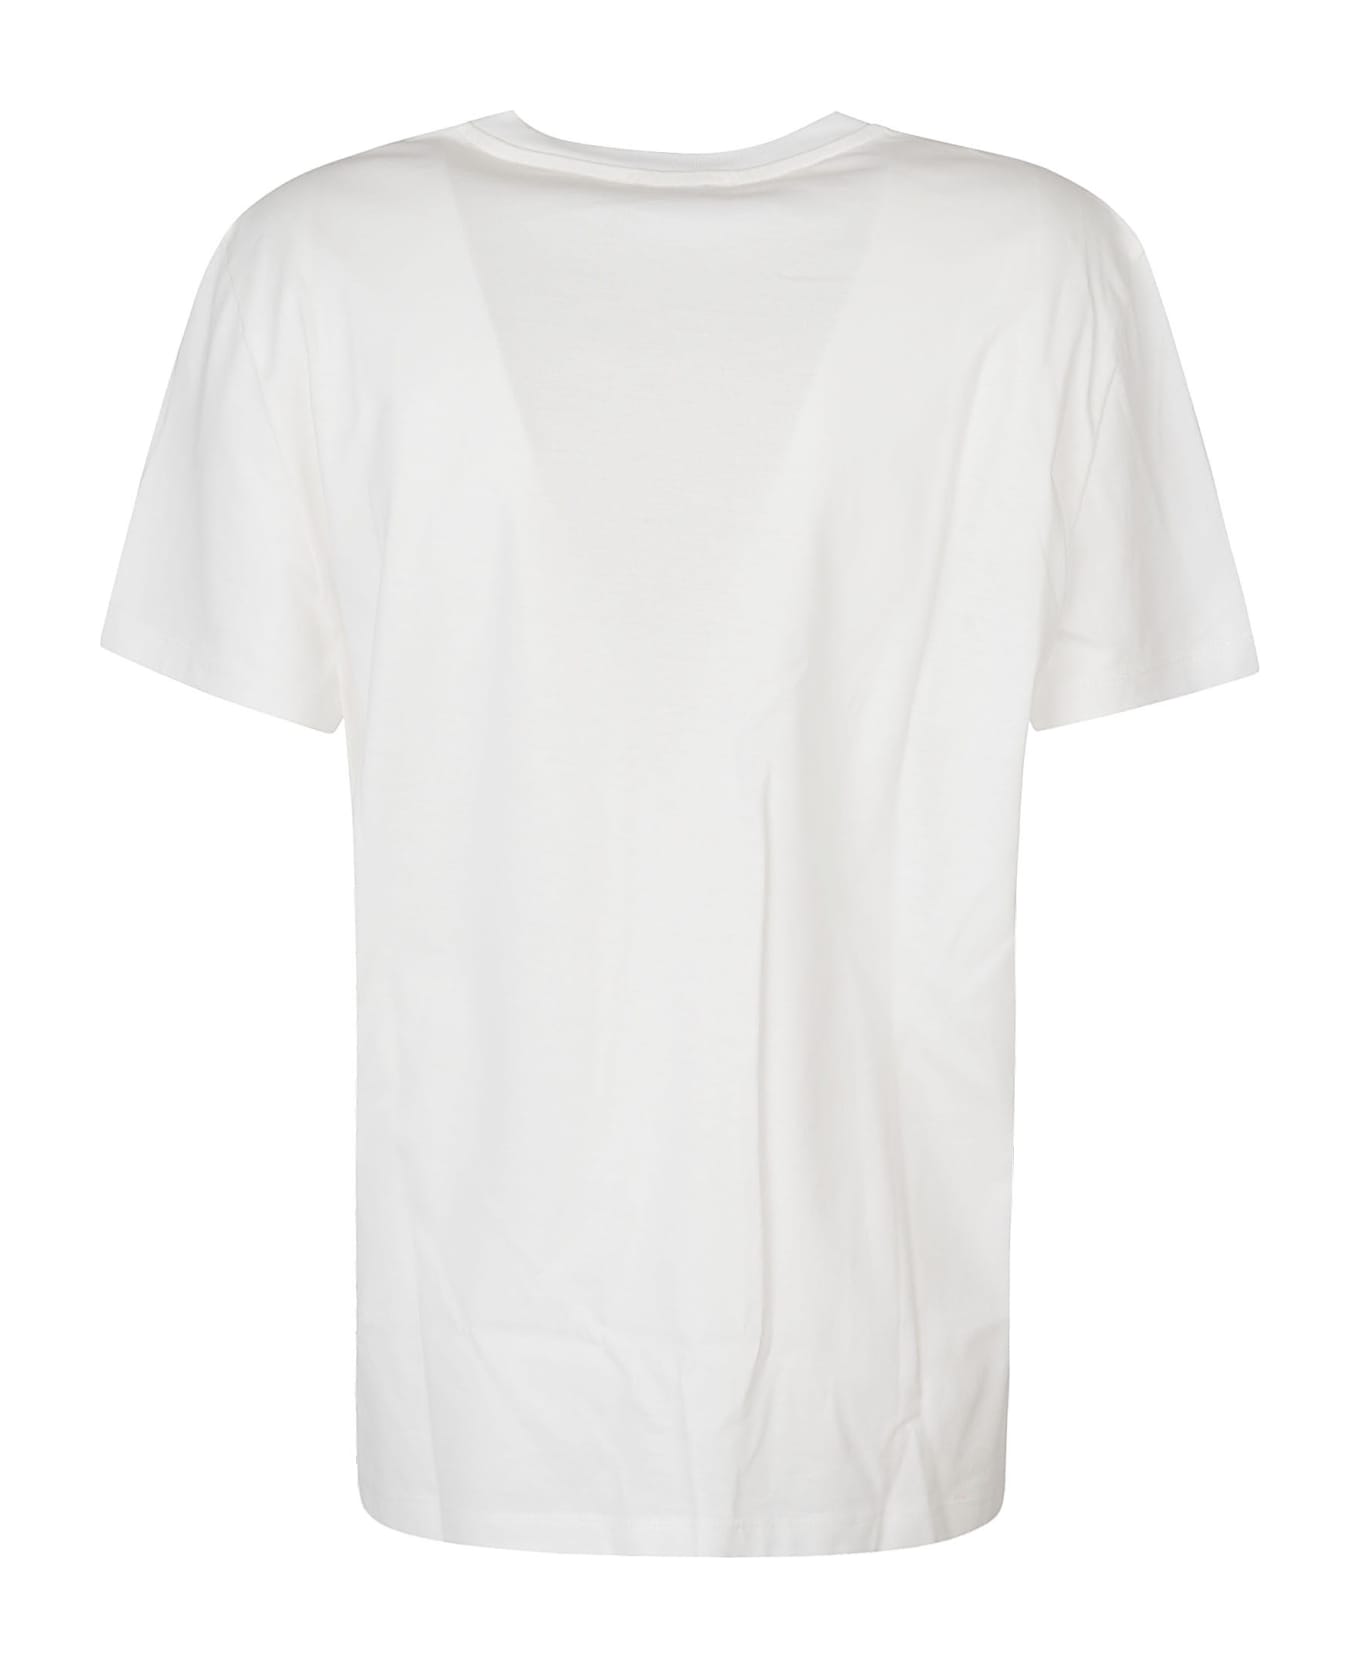 Max Mara Embroidered Regular T-shirt - White/Ivory